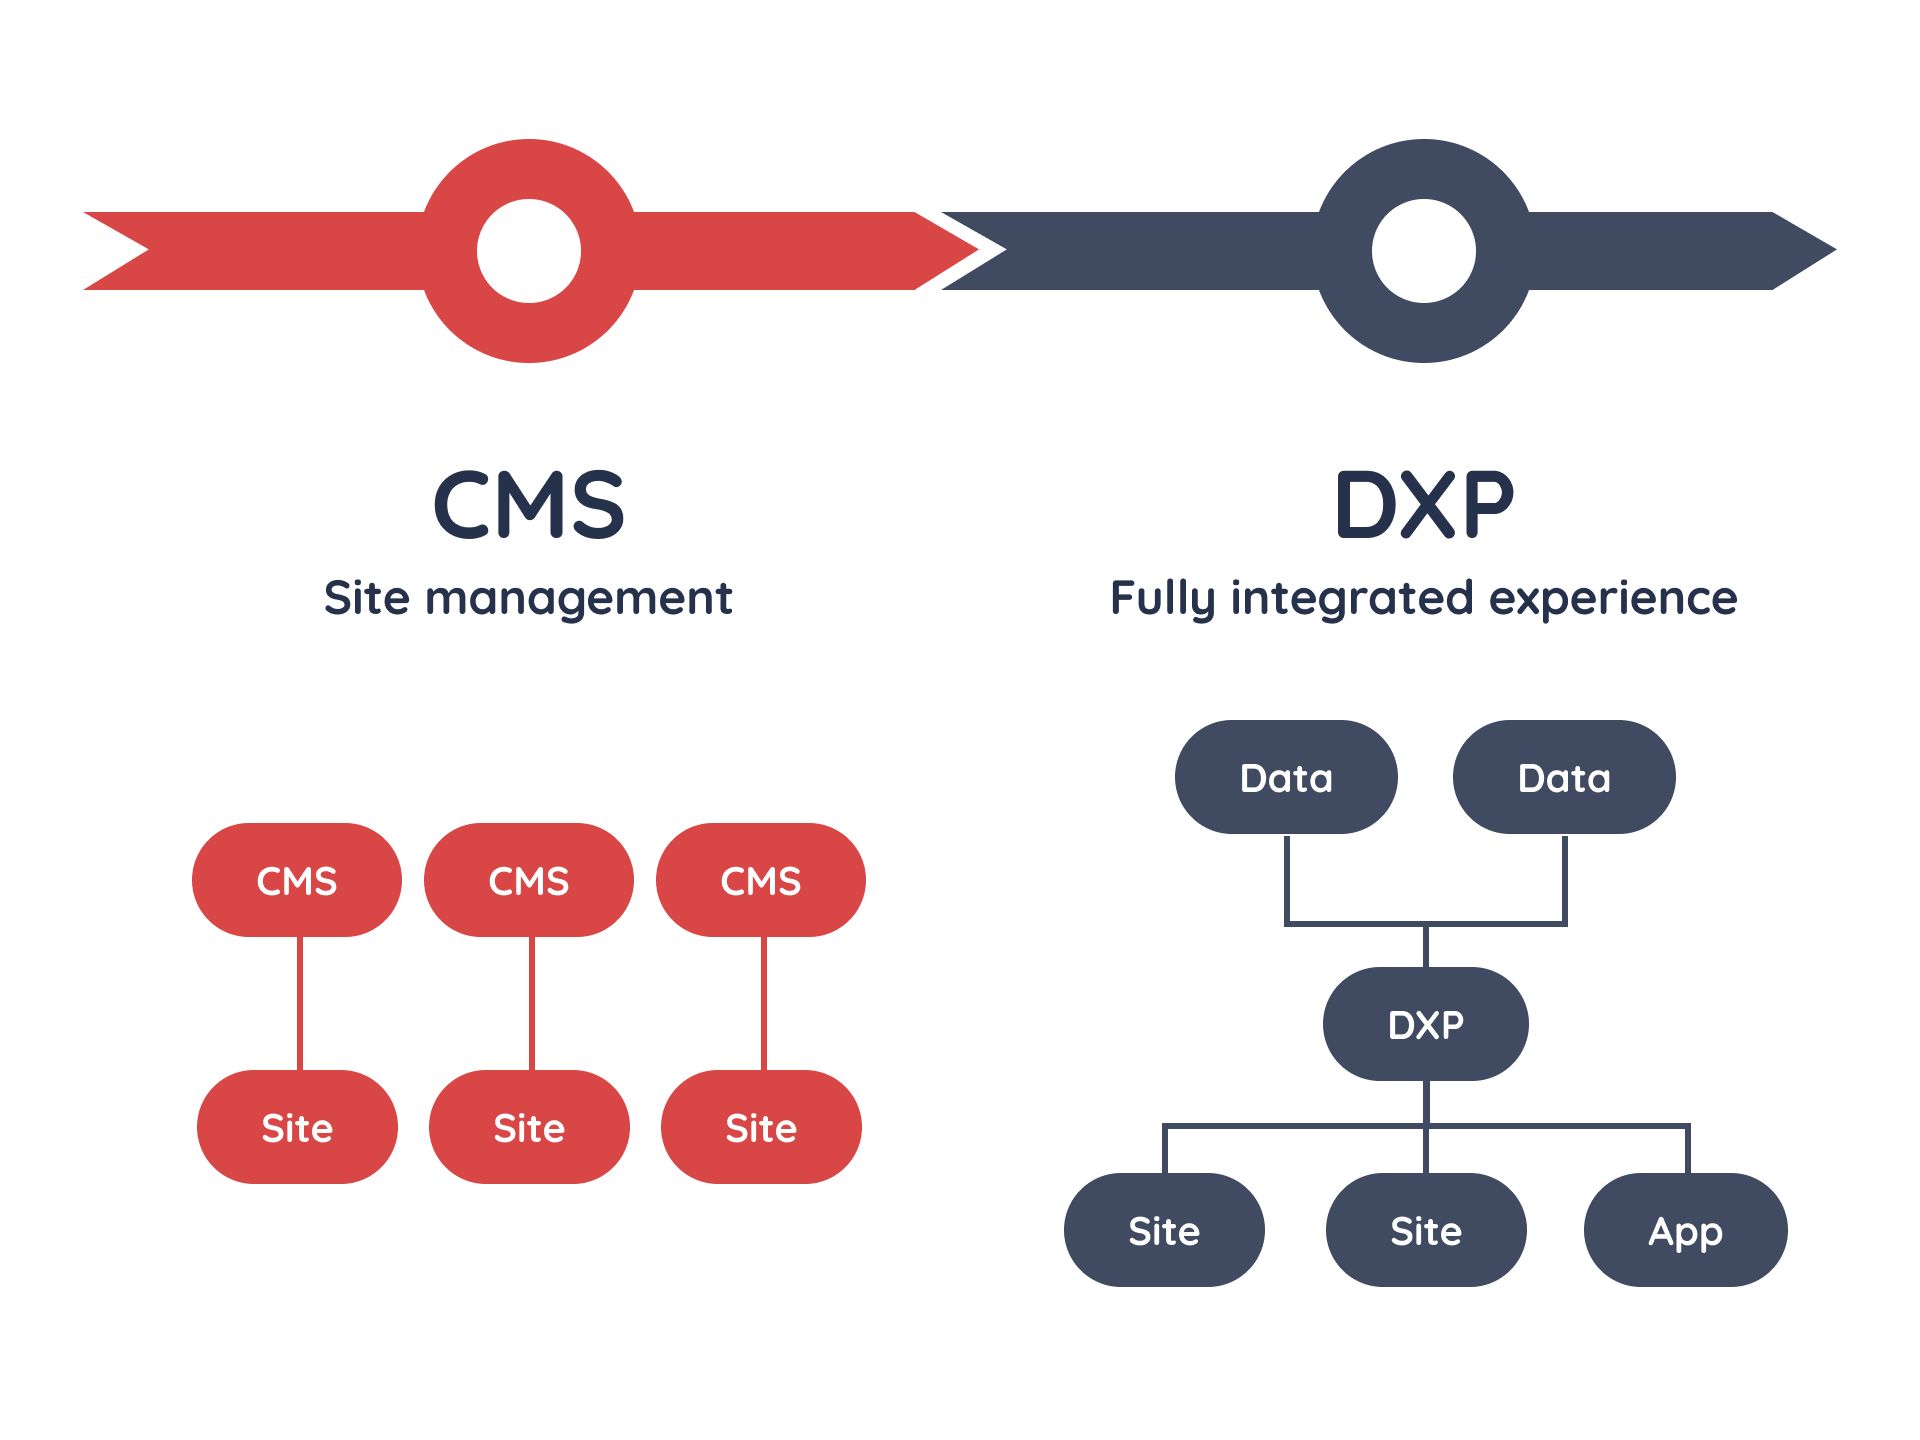 DXP vs CMS